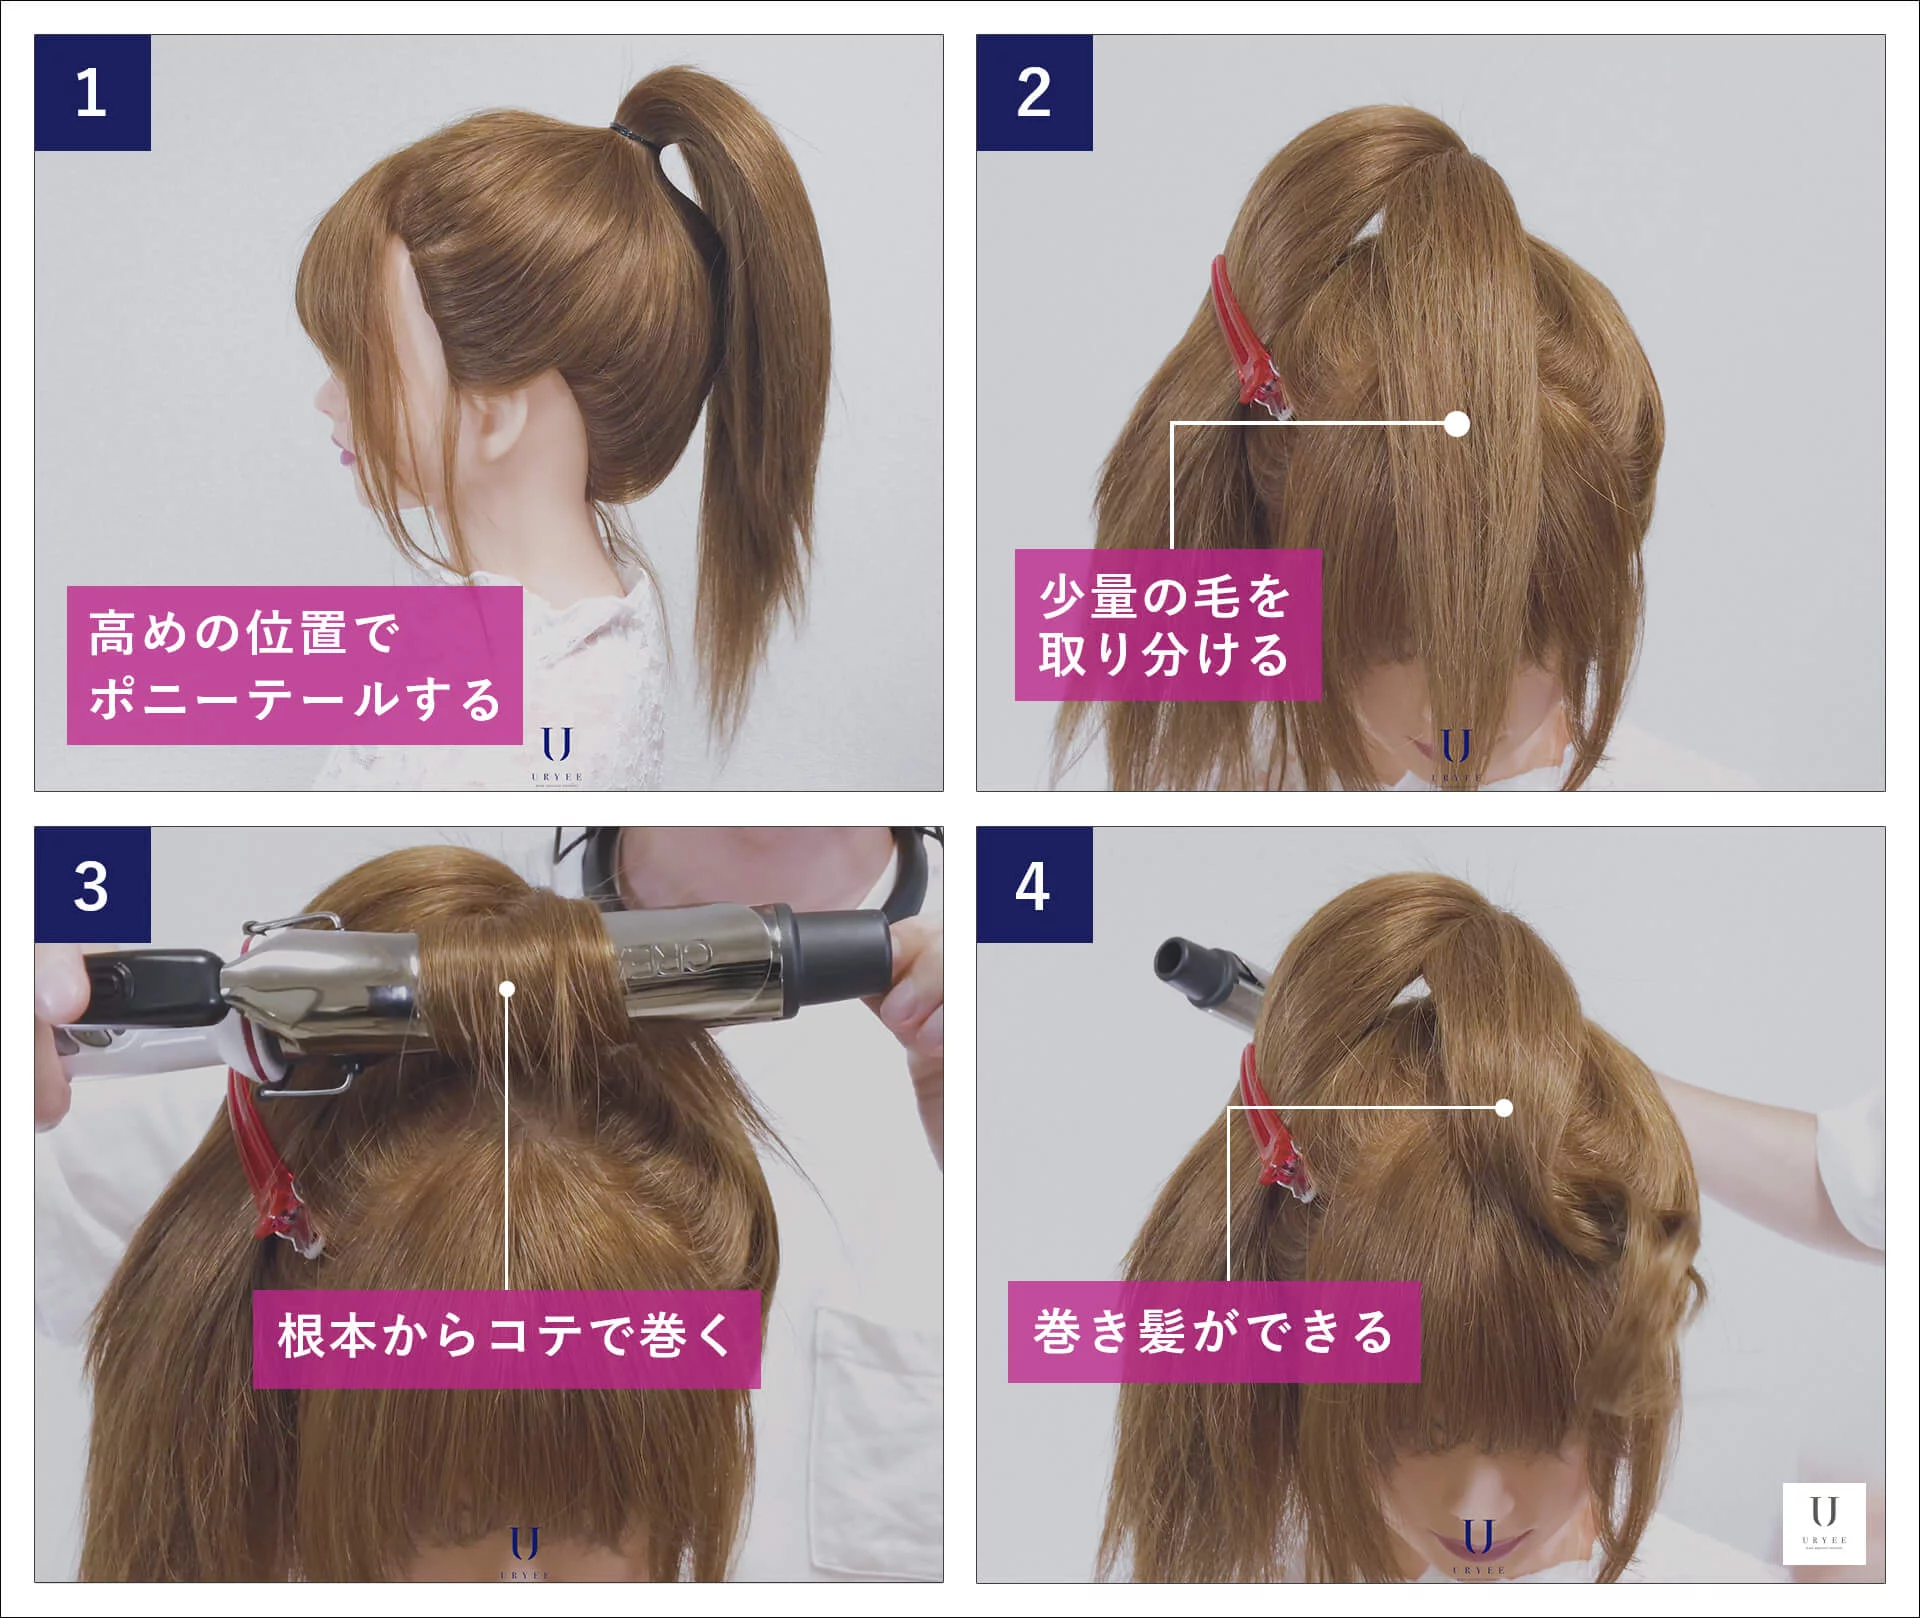 ポニーテール ツインテール から簡単に巻き髪をつくる巻き方